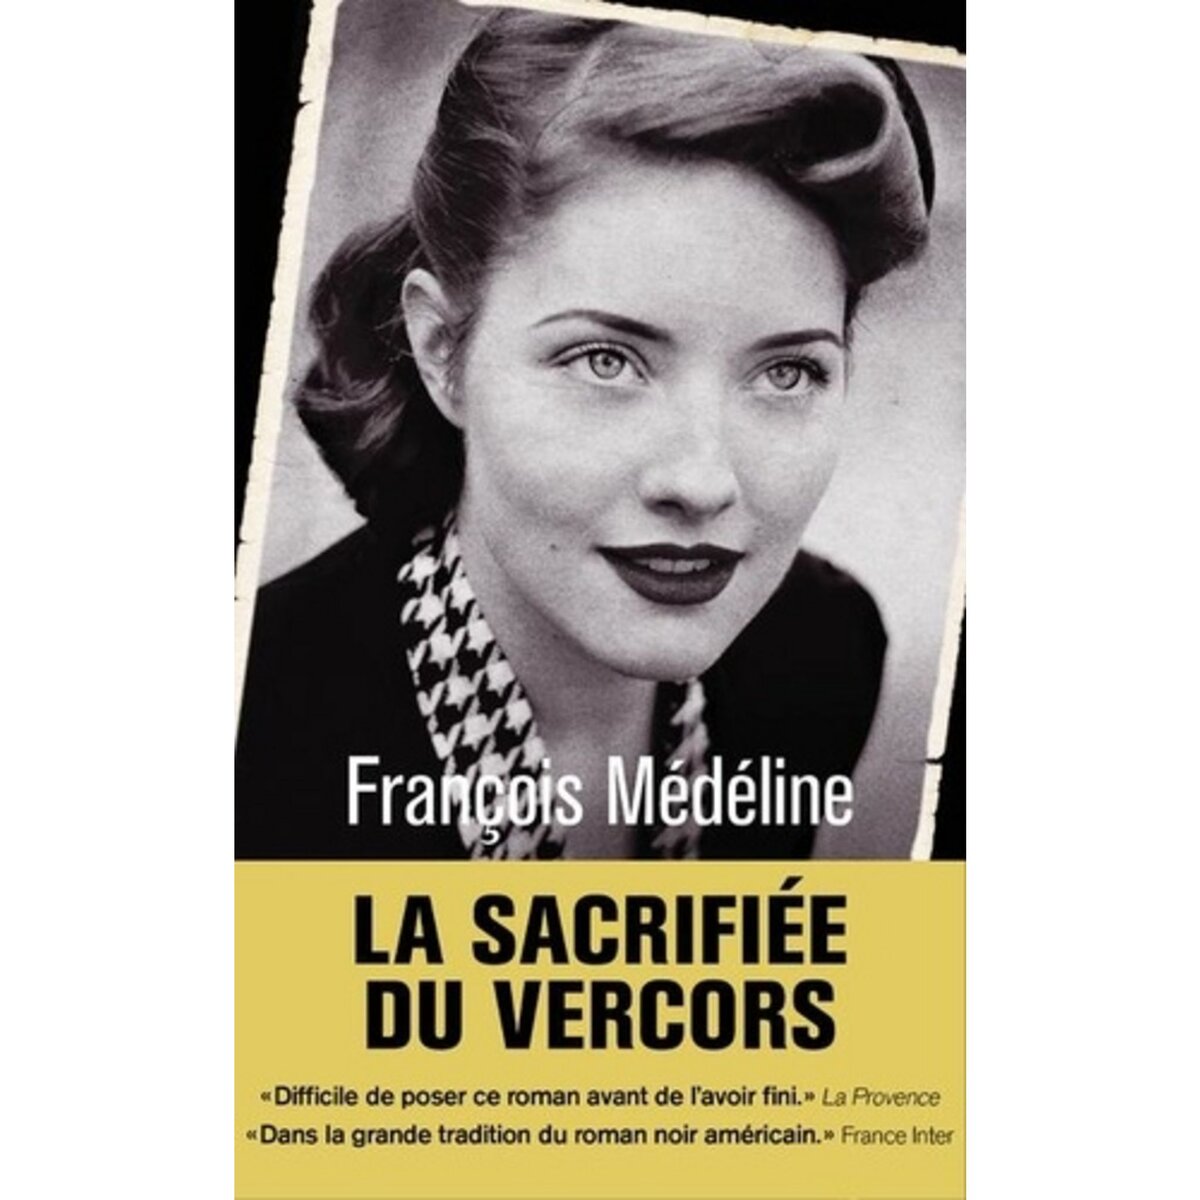  LA SACRIFIEE DU VERCORS, Médéline François